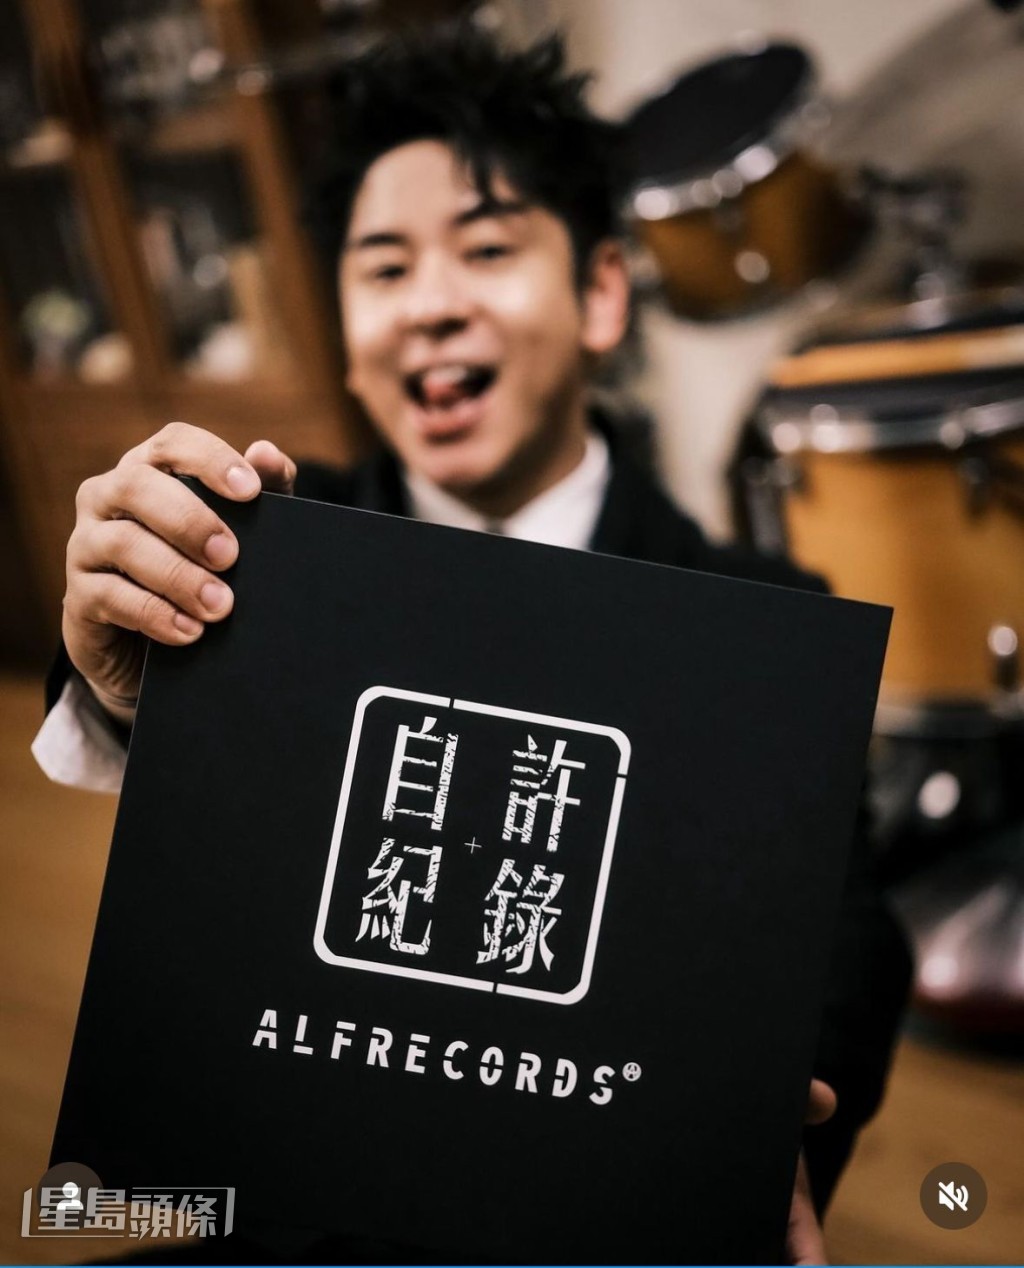 Alfred努力创作自家唱片品牌“自许纪录”。